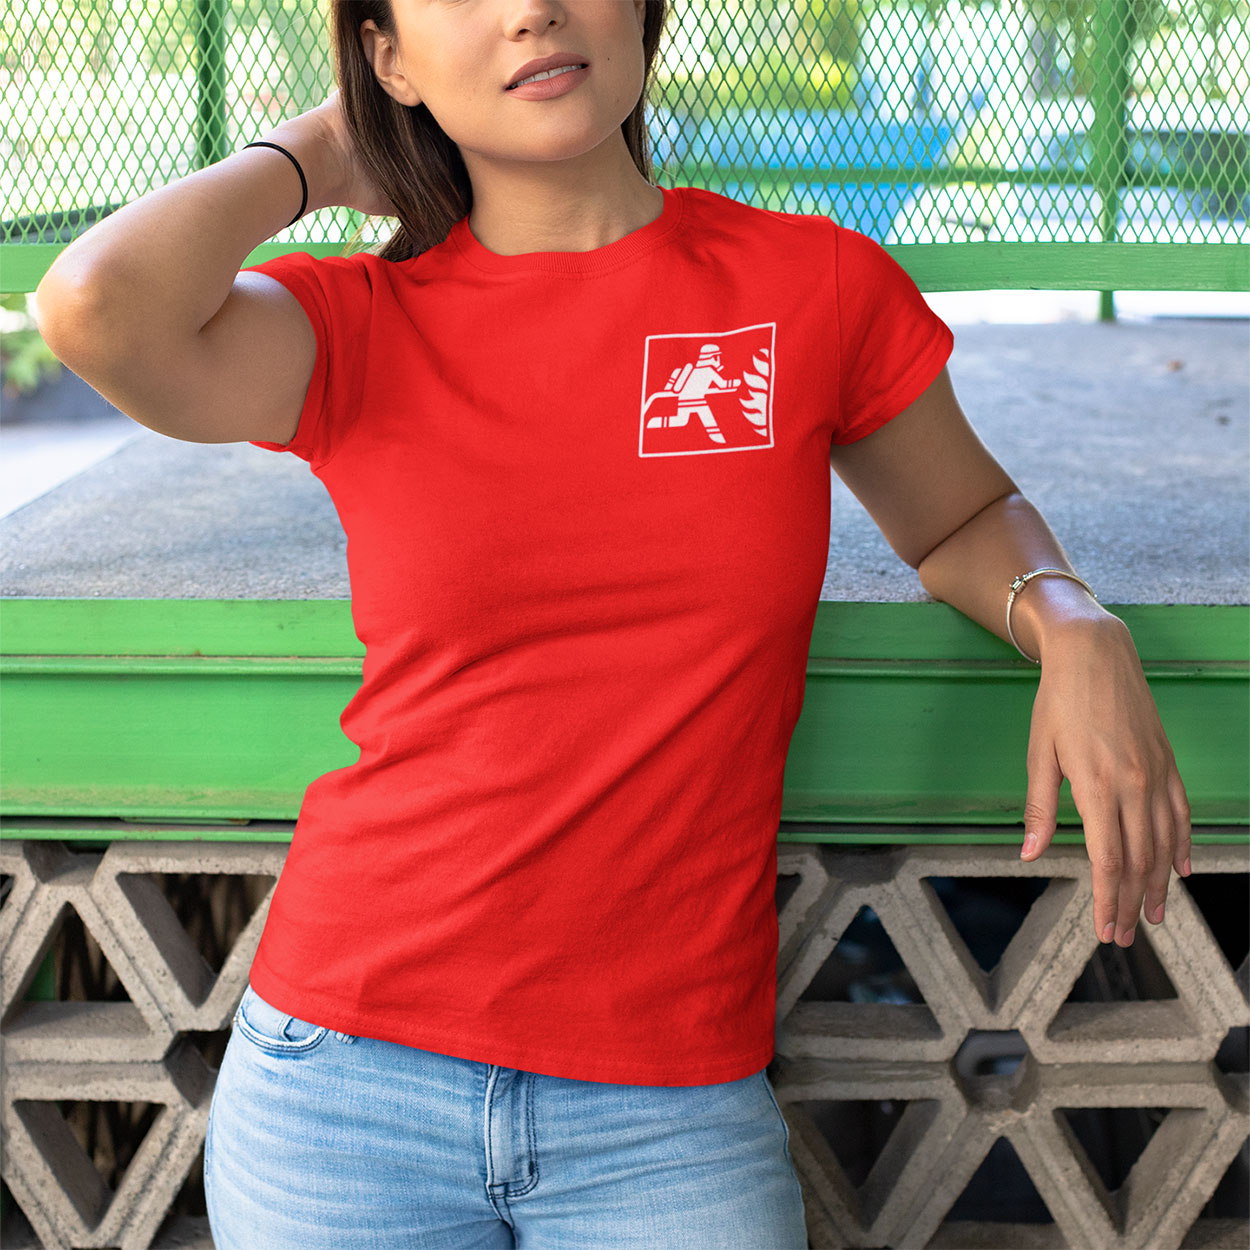 Feuerlöscherin - Inhalt 100% Feuerwehrfrau T-Shirt